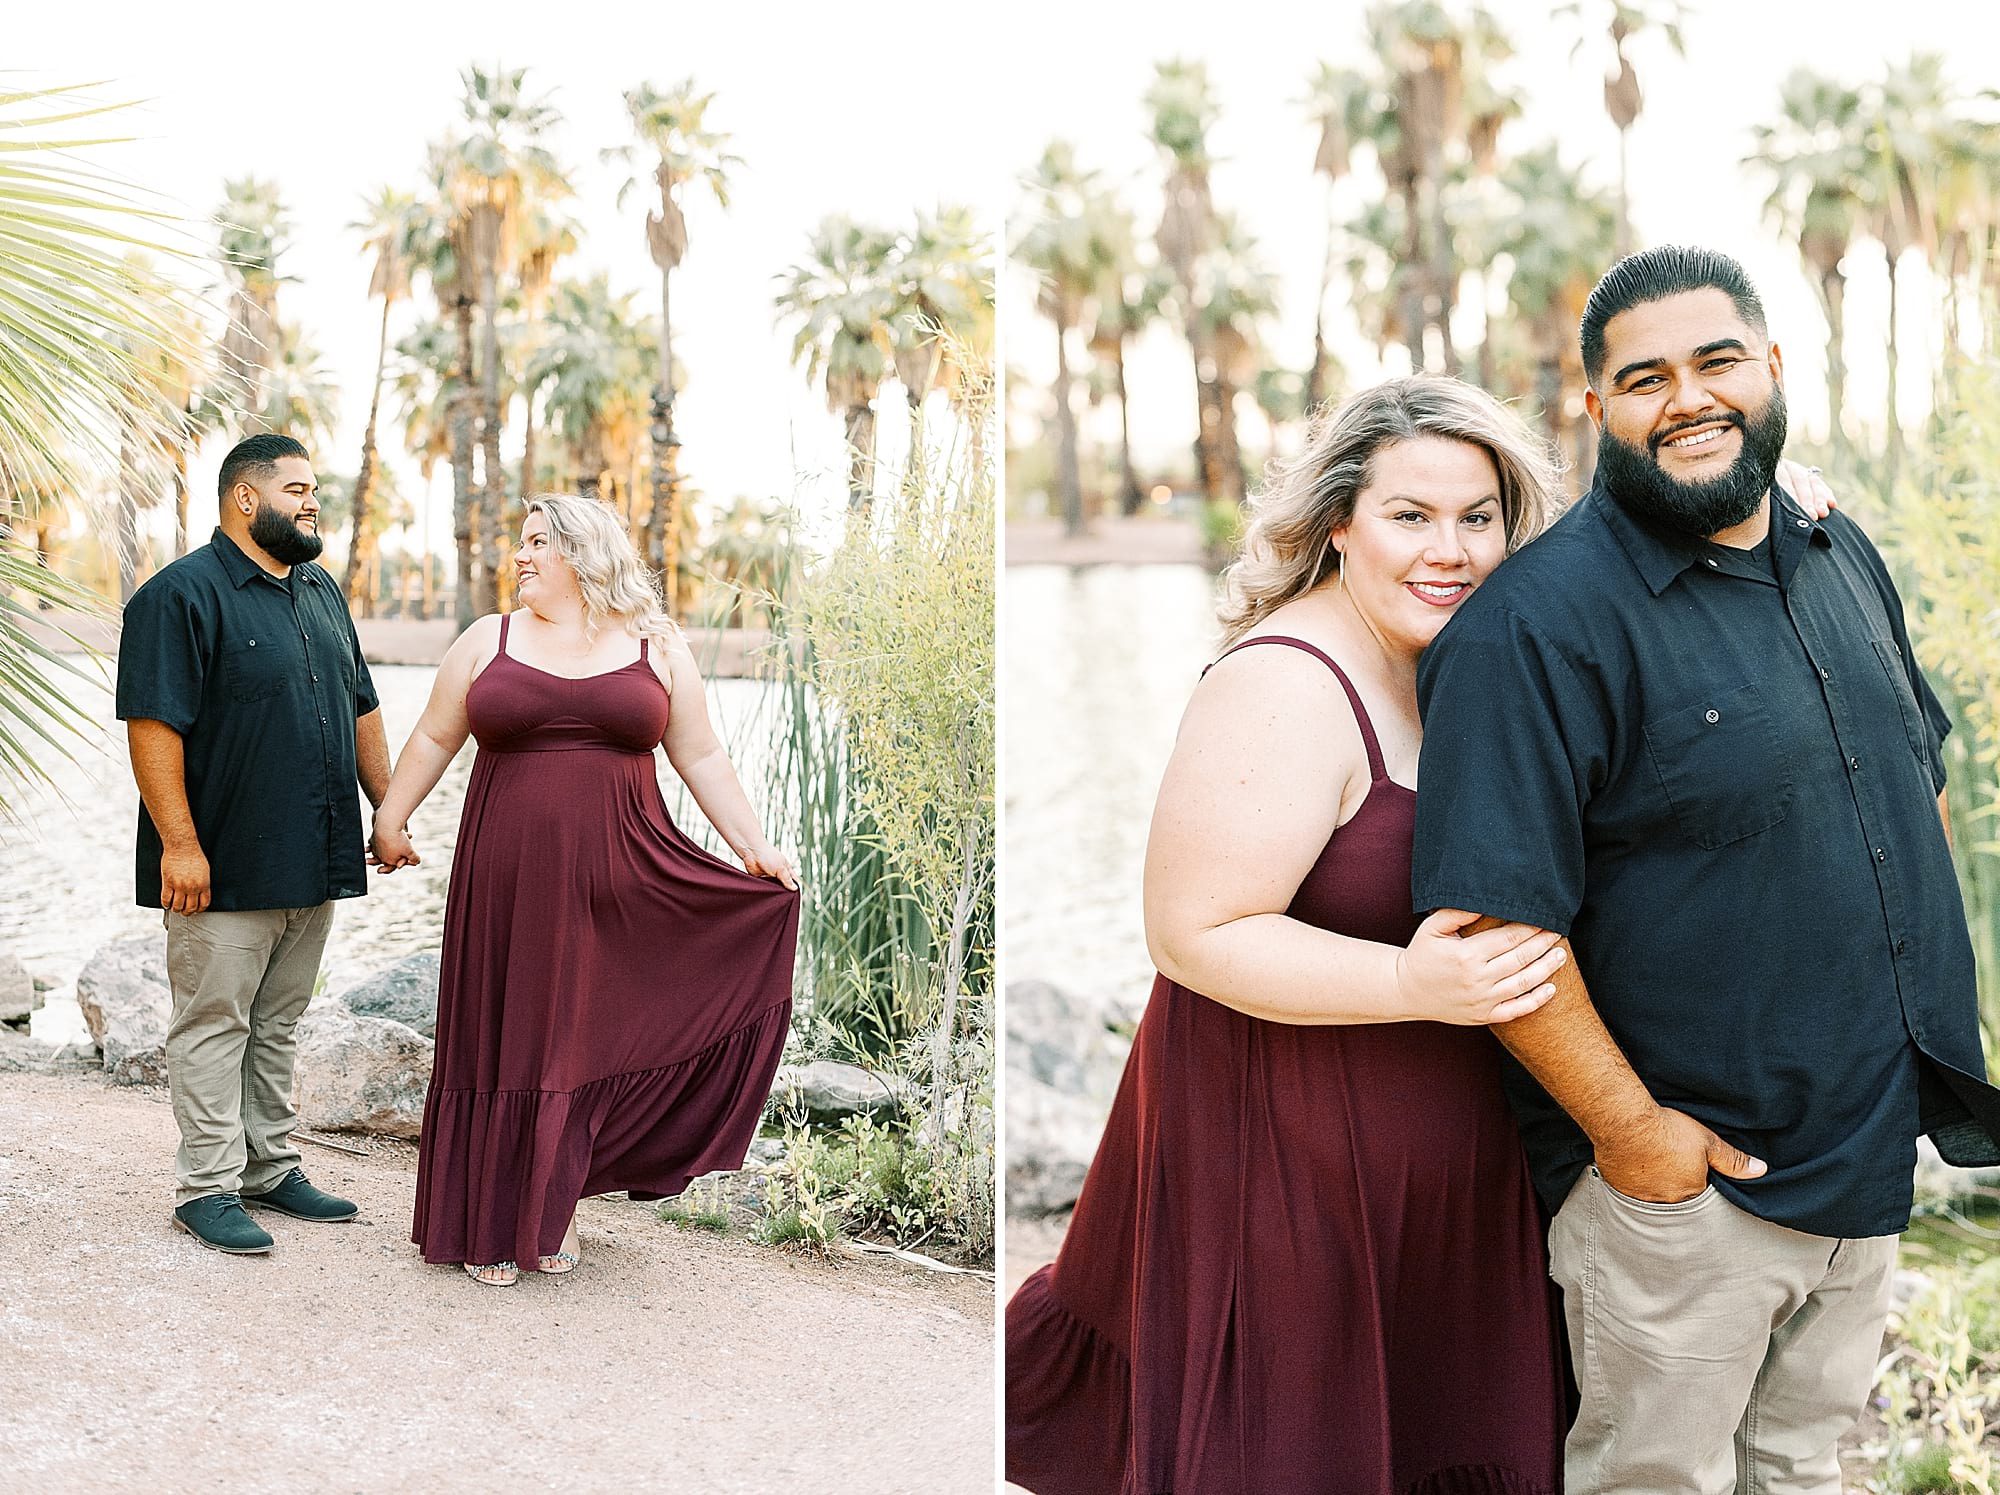 Papago Park Engagement Photos Phoenix Arizona Wedding Photographers